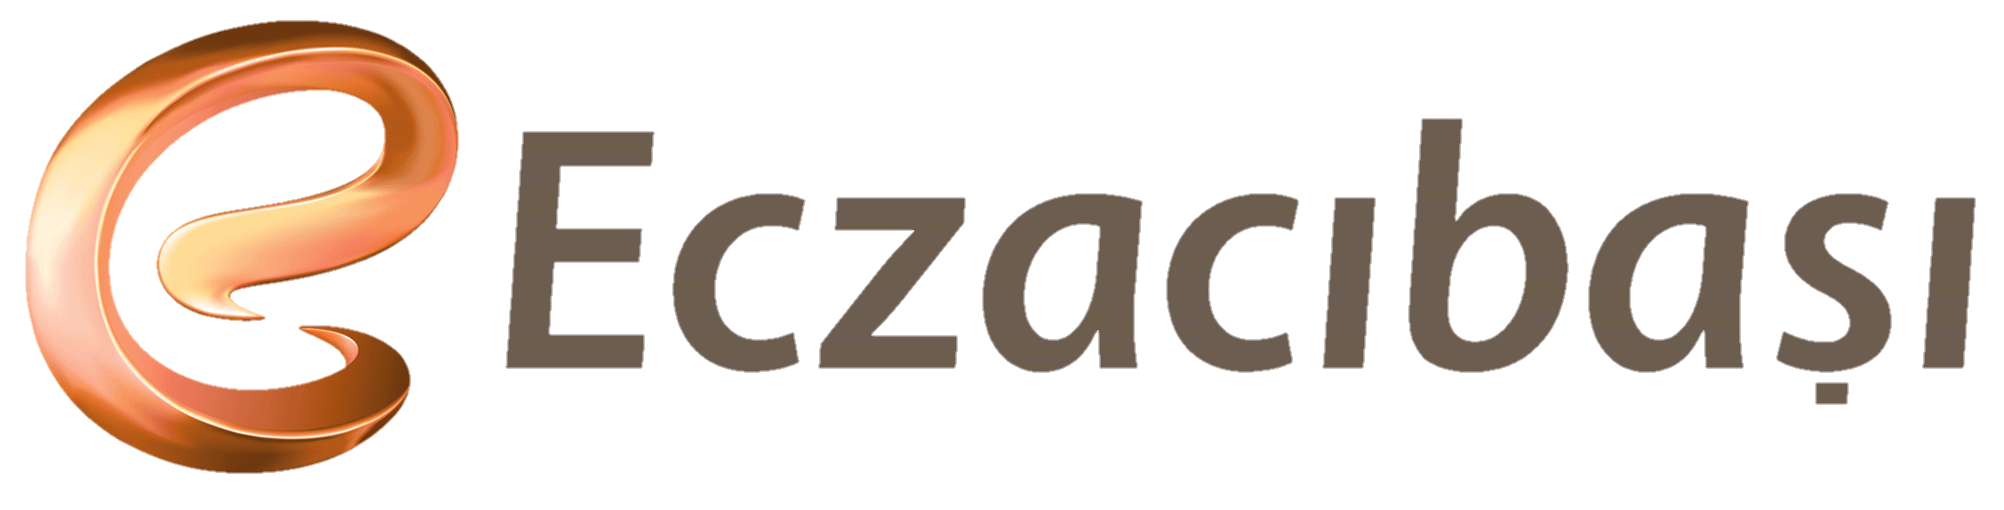 Eczacıbaşı Holding logosu